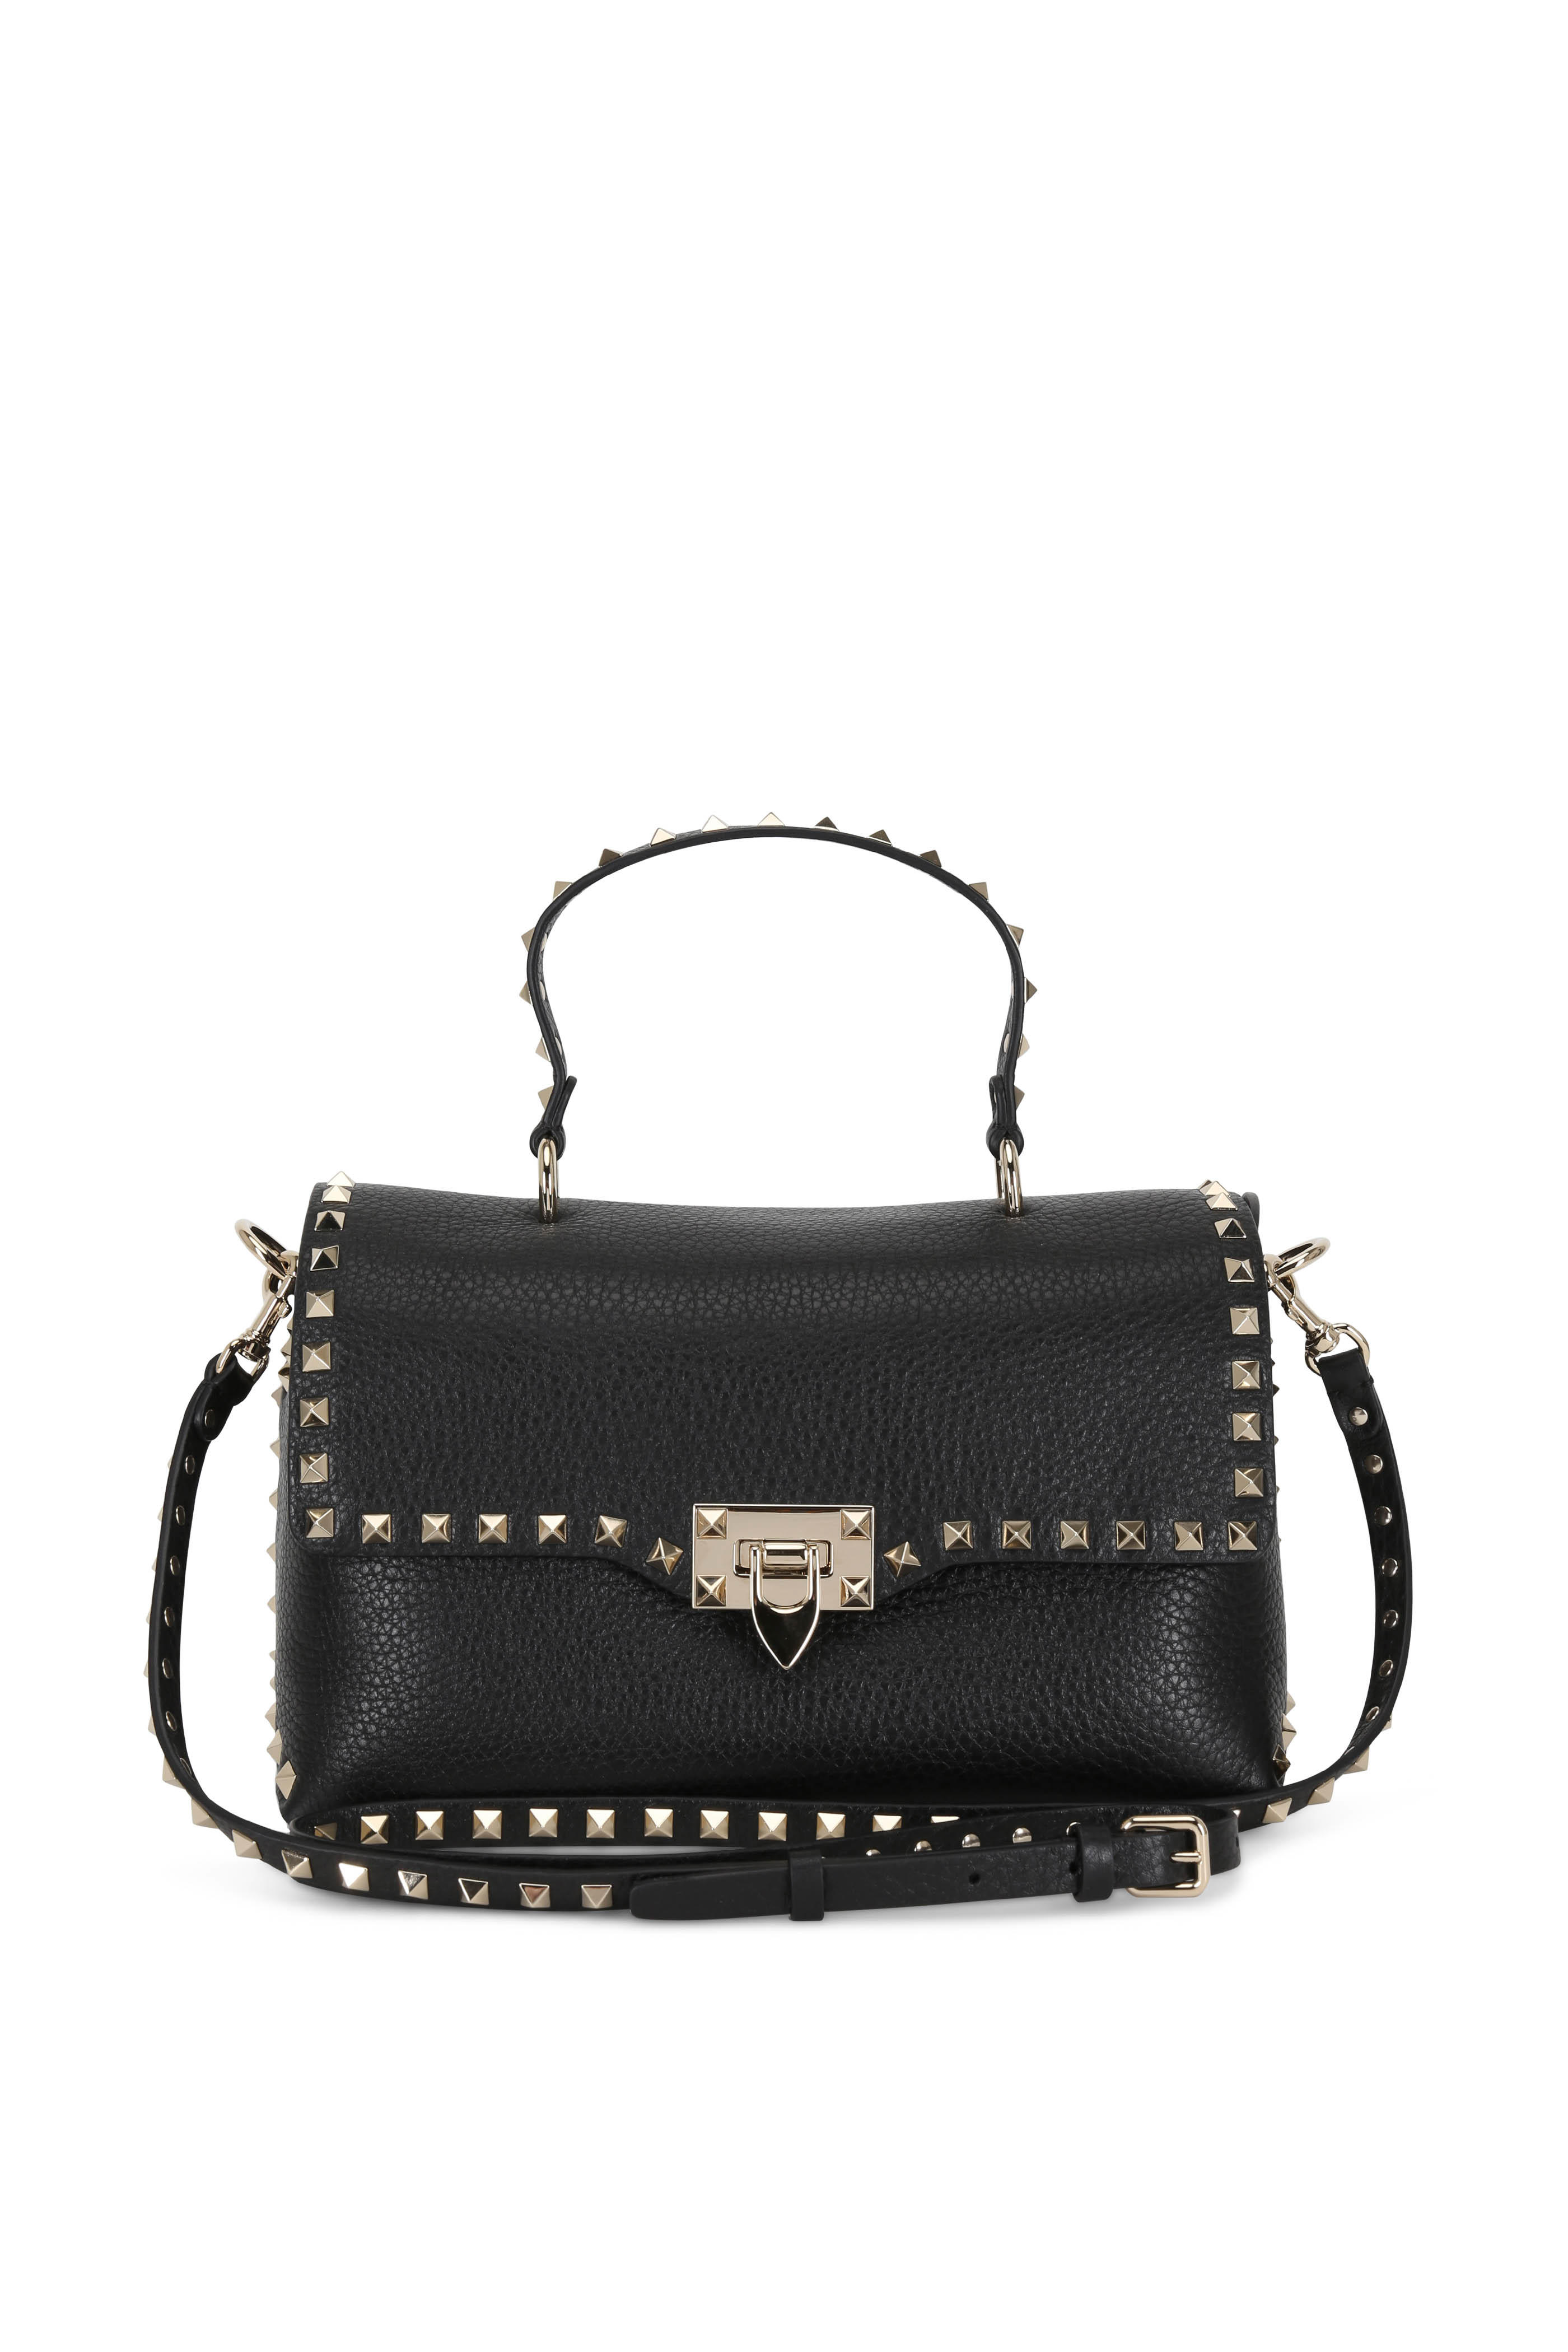 Valentino Garavani - Rockstud Black Leather Top Handle Medium Bag